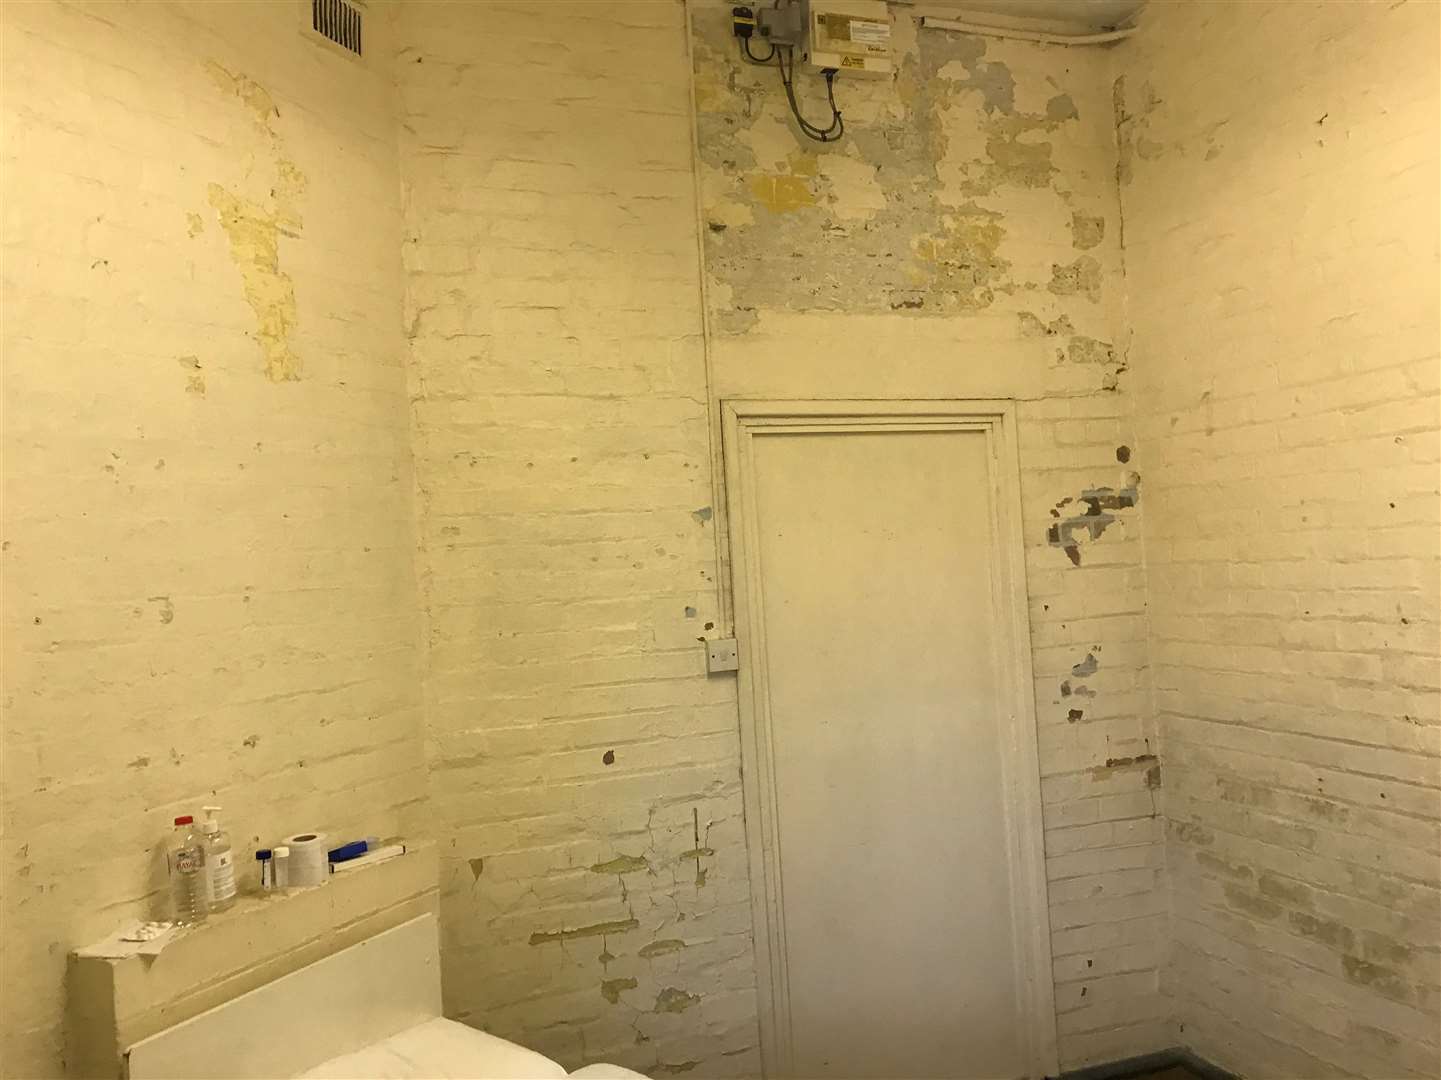 An isolation room inside the barracks